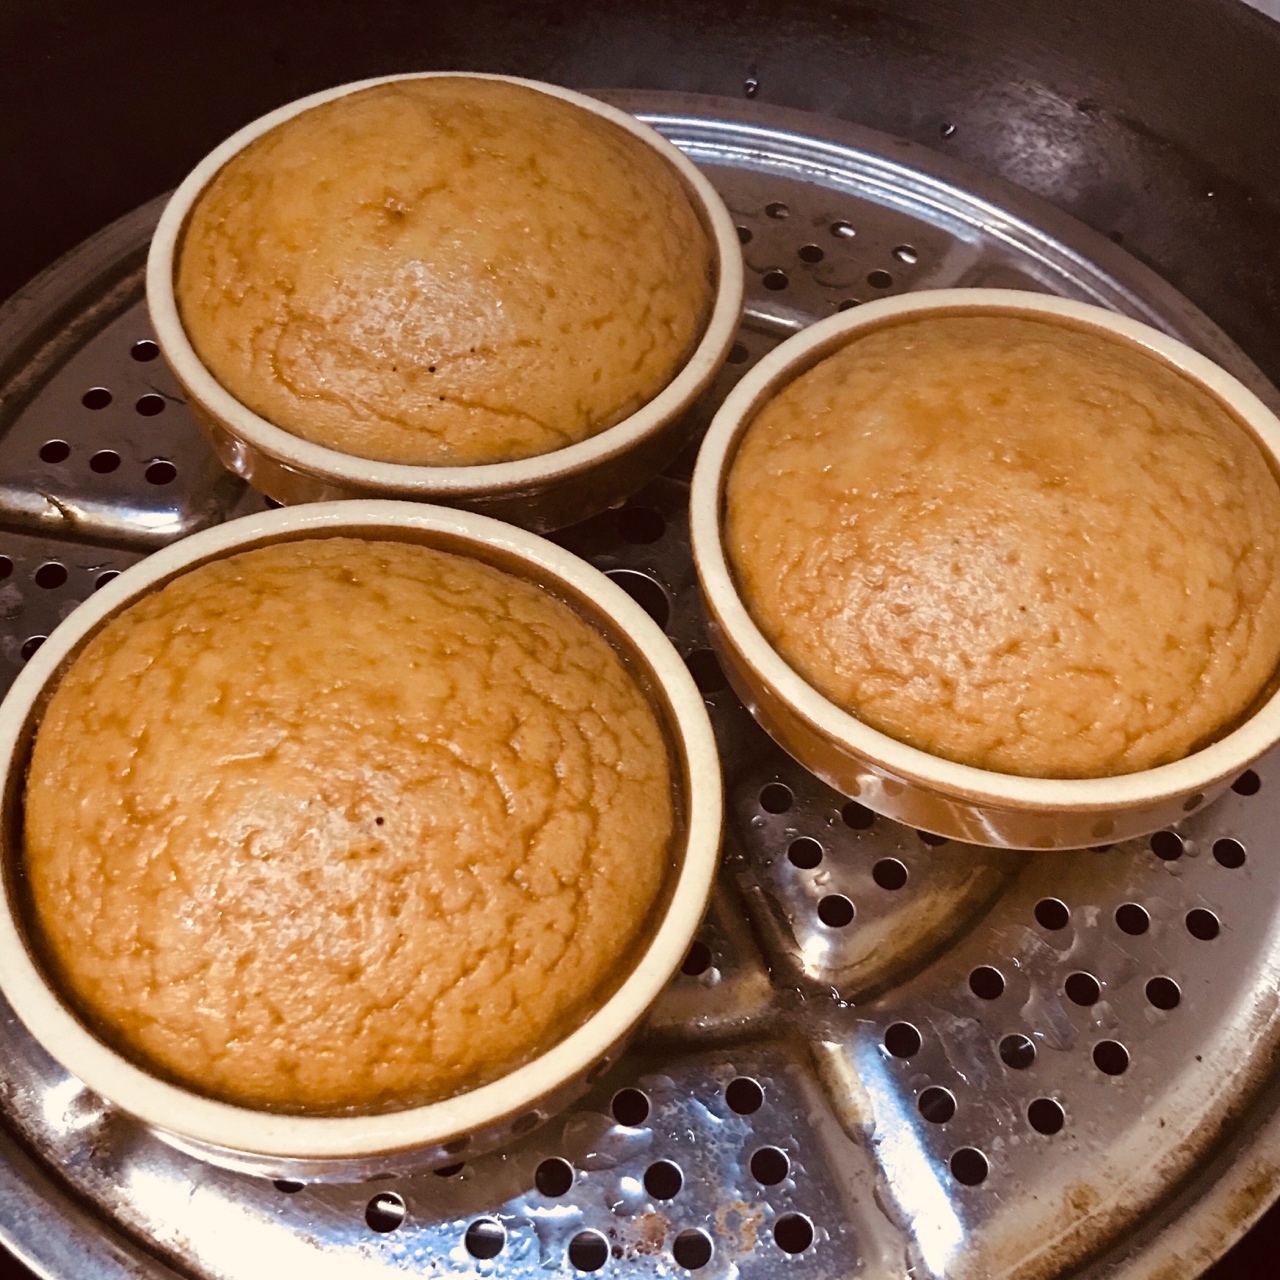 简易发酵红糖马拉糕-更新冬天发酵蒸制步骤